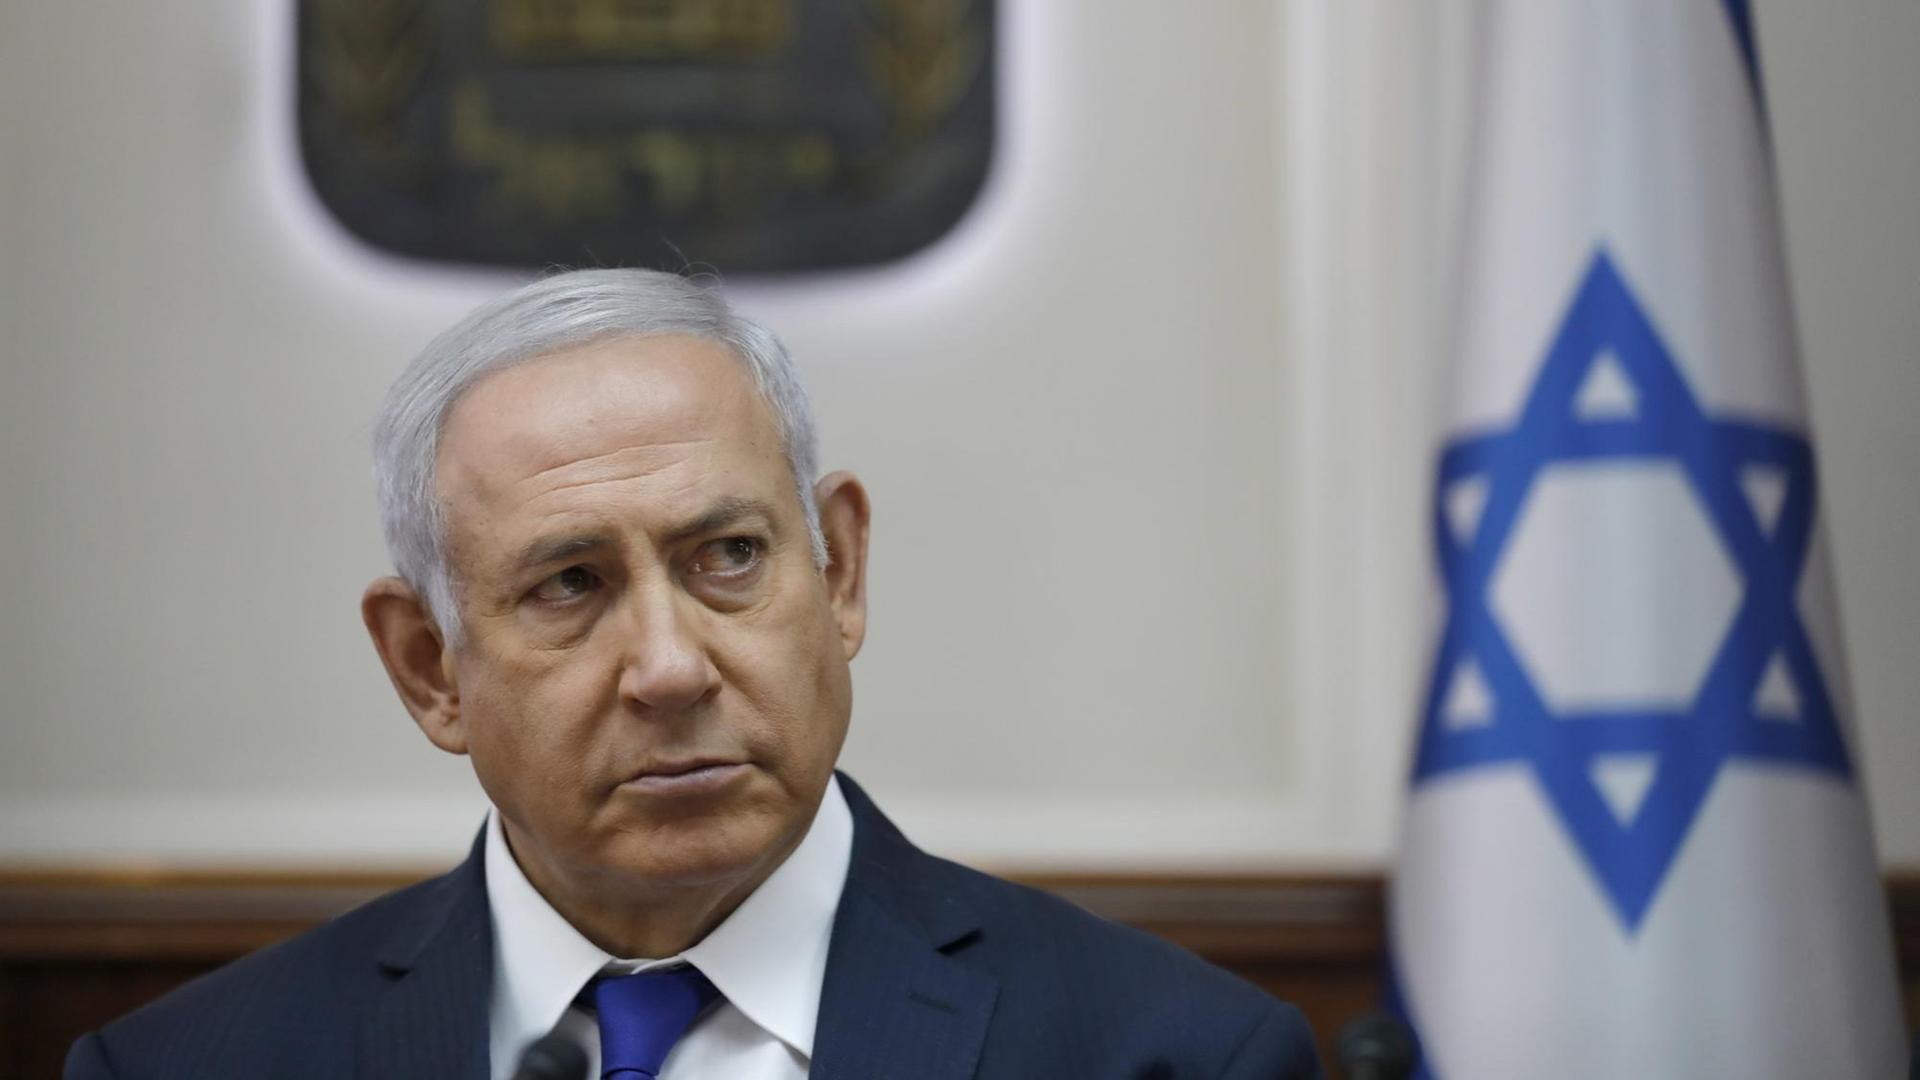 Israels Ministerpräsident Benjamin Netanjahu ist seit 2009 durchgehend im Amt. Er ist wegen Korruption angeklagt.